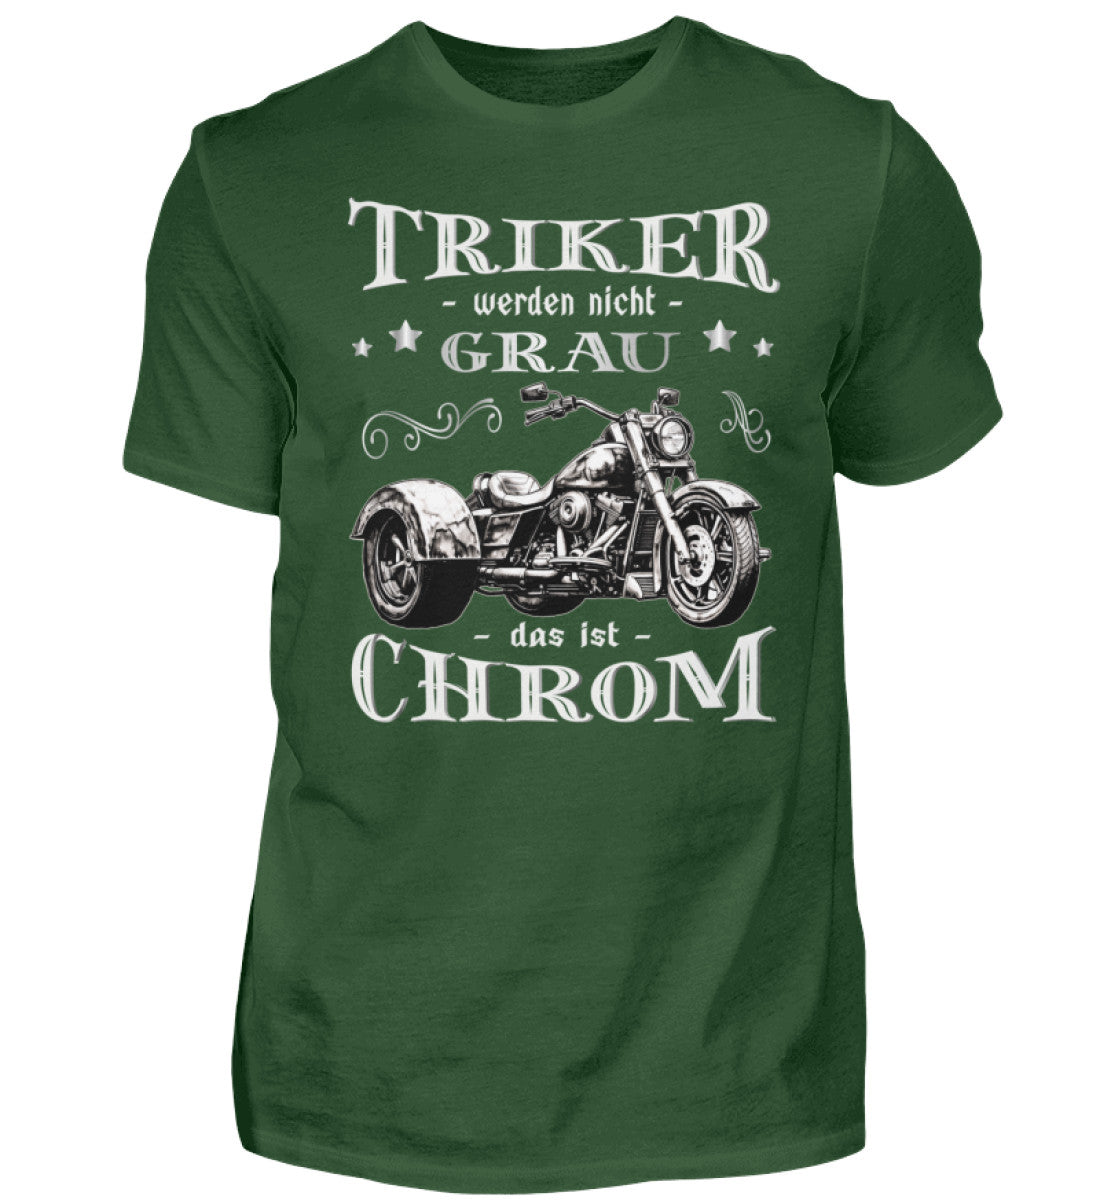 Ein Triker T-Shirt für Trikefahrer von Wingbikers mit dem Aufdruck, Triker werden nicht grau - Das ist Chrom, in dunkelgrün.